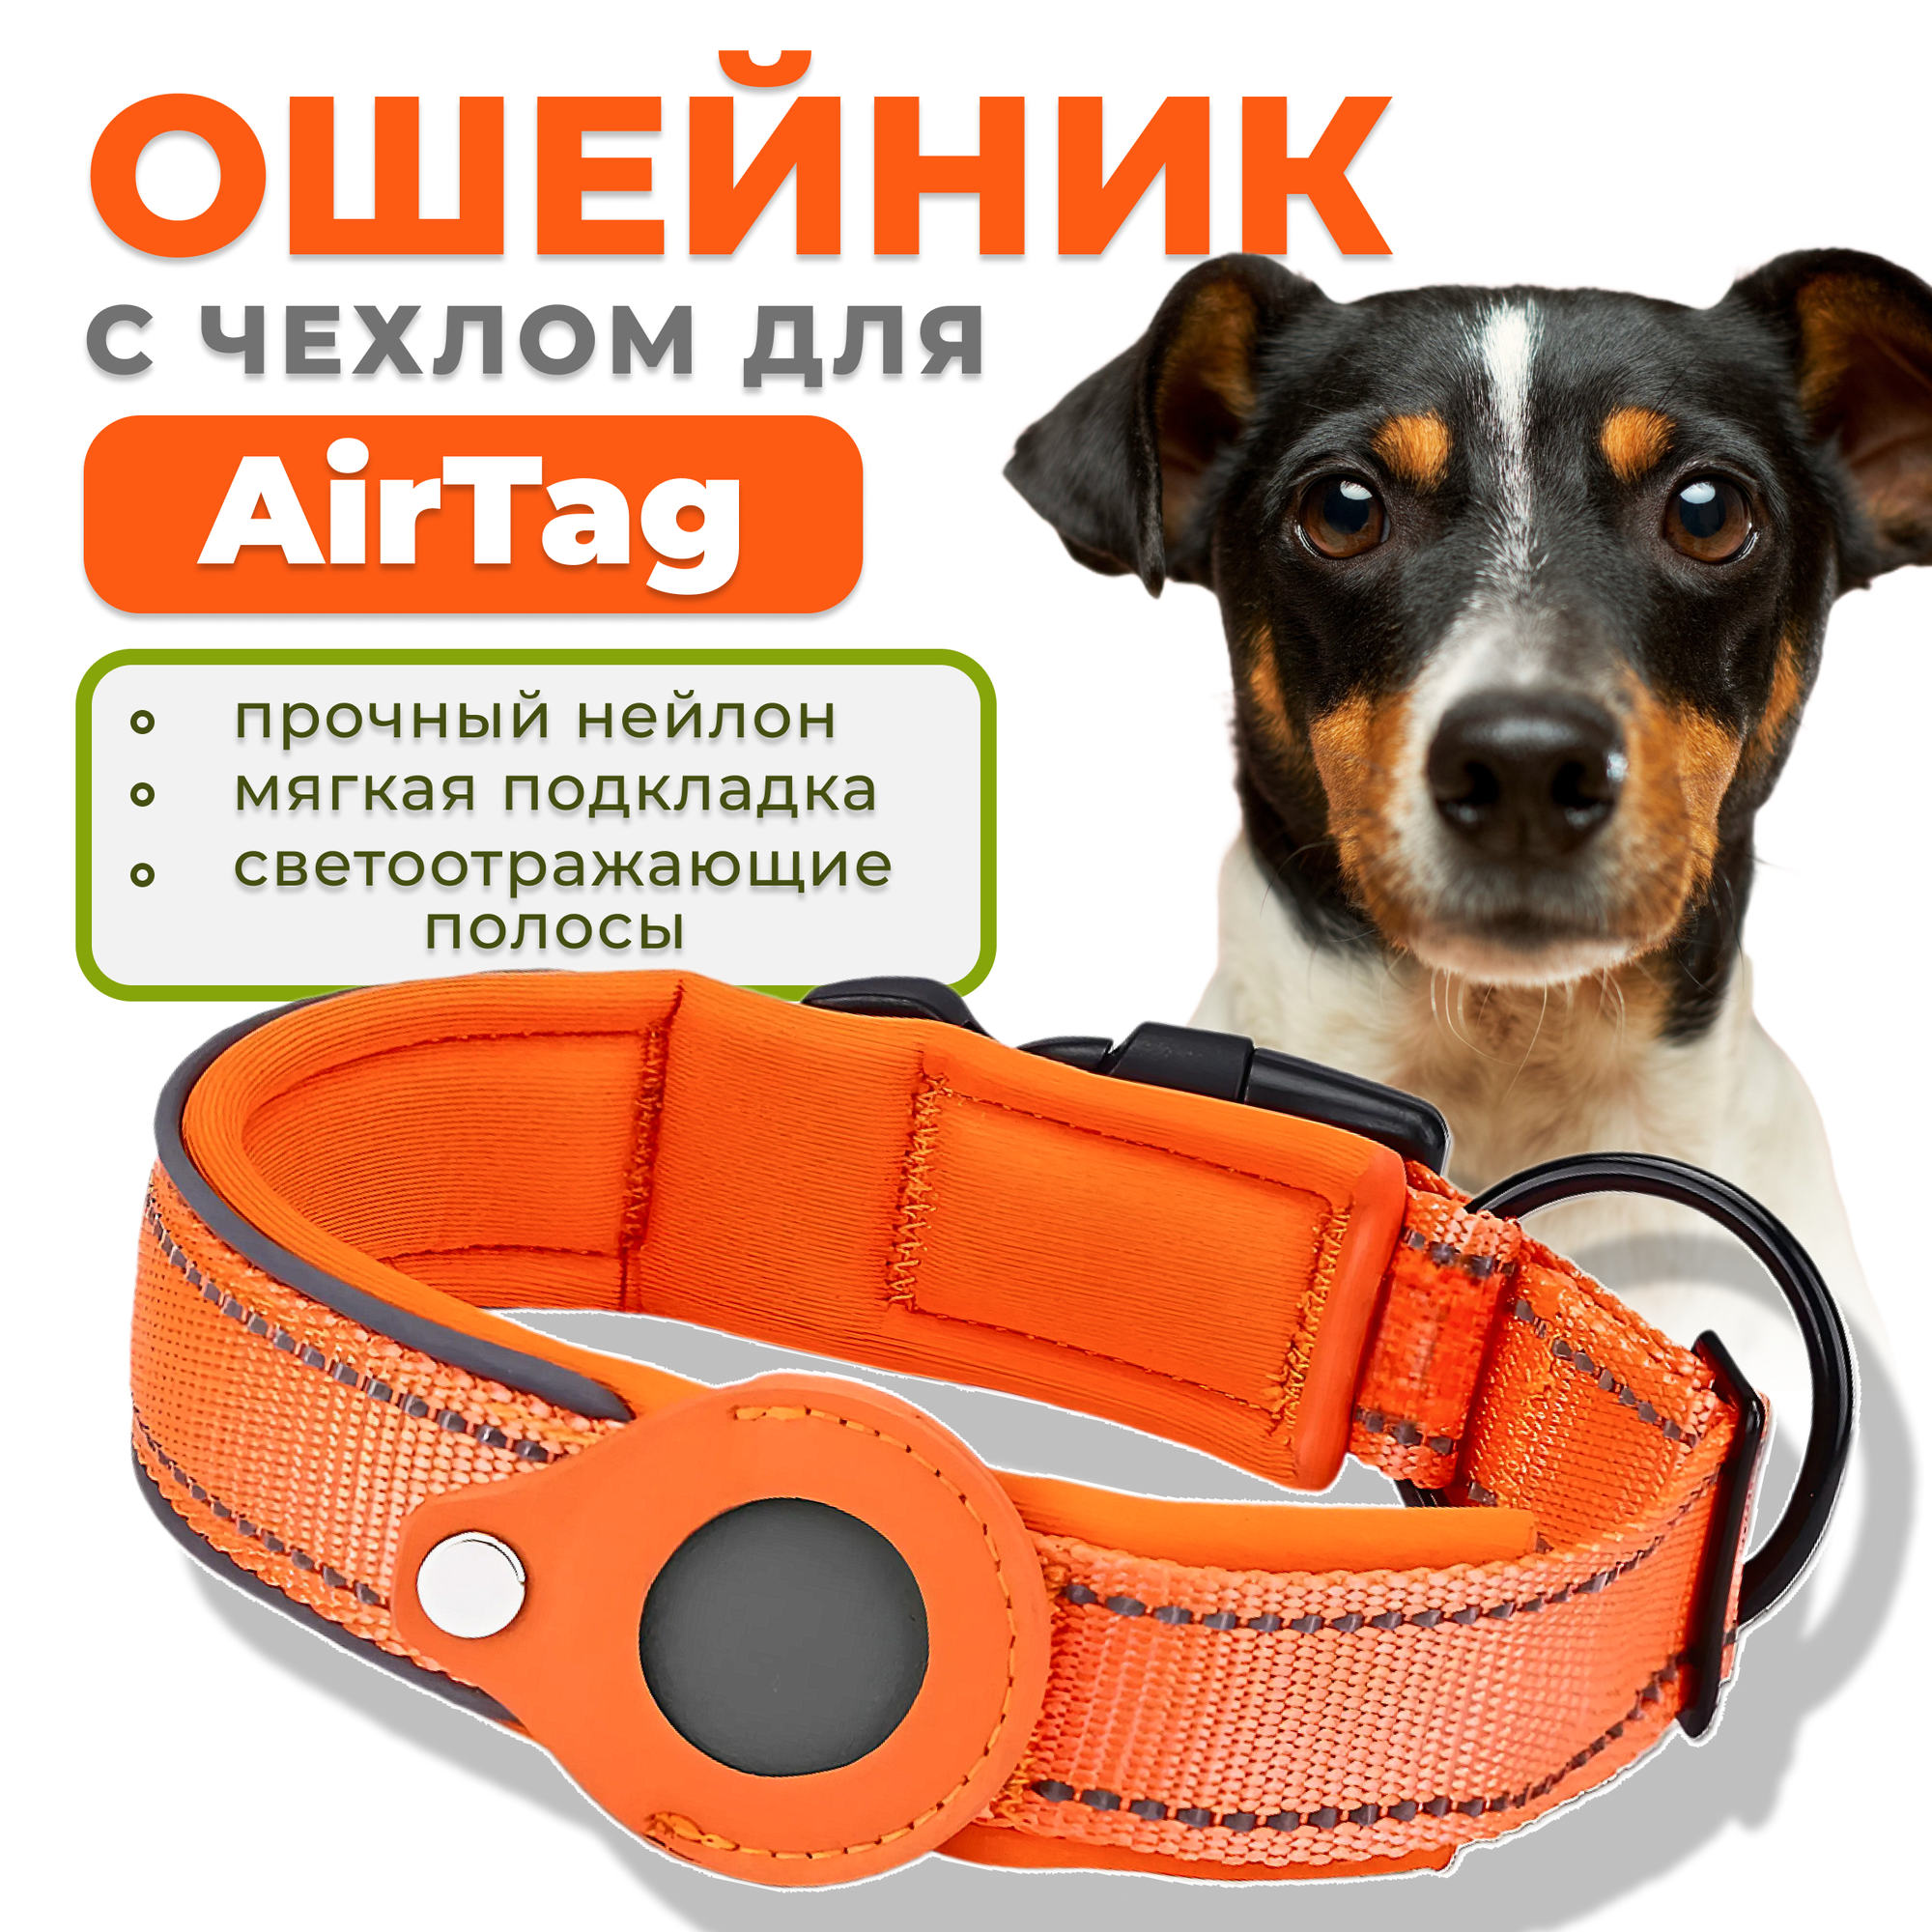 Ошейник для собак с чехлом для AirTag, размер S, оранжевый